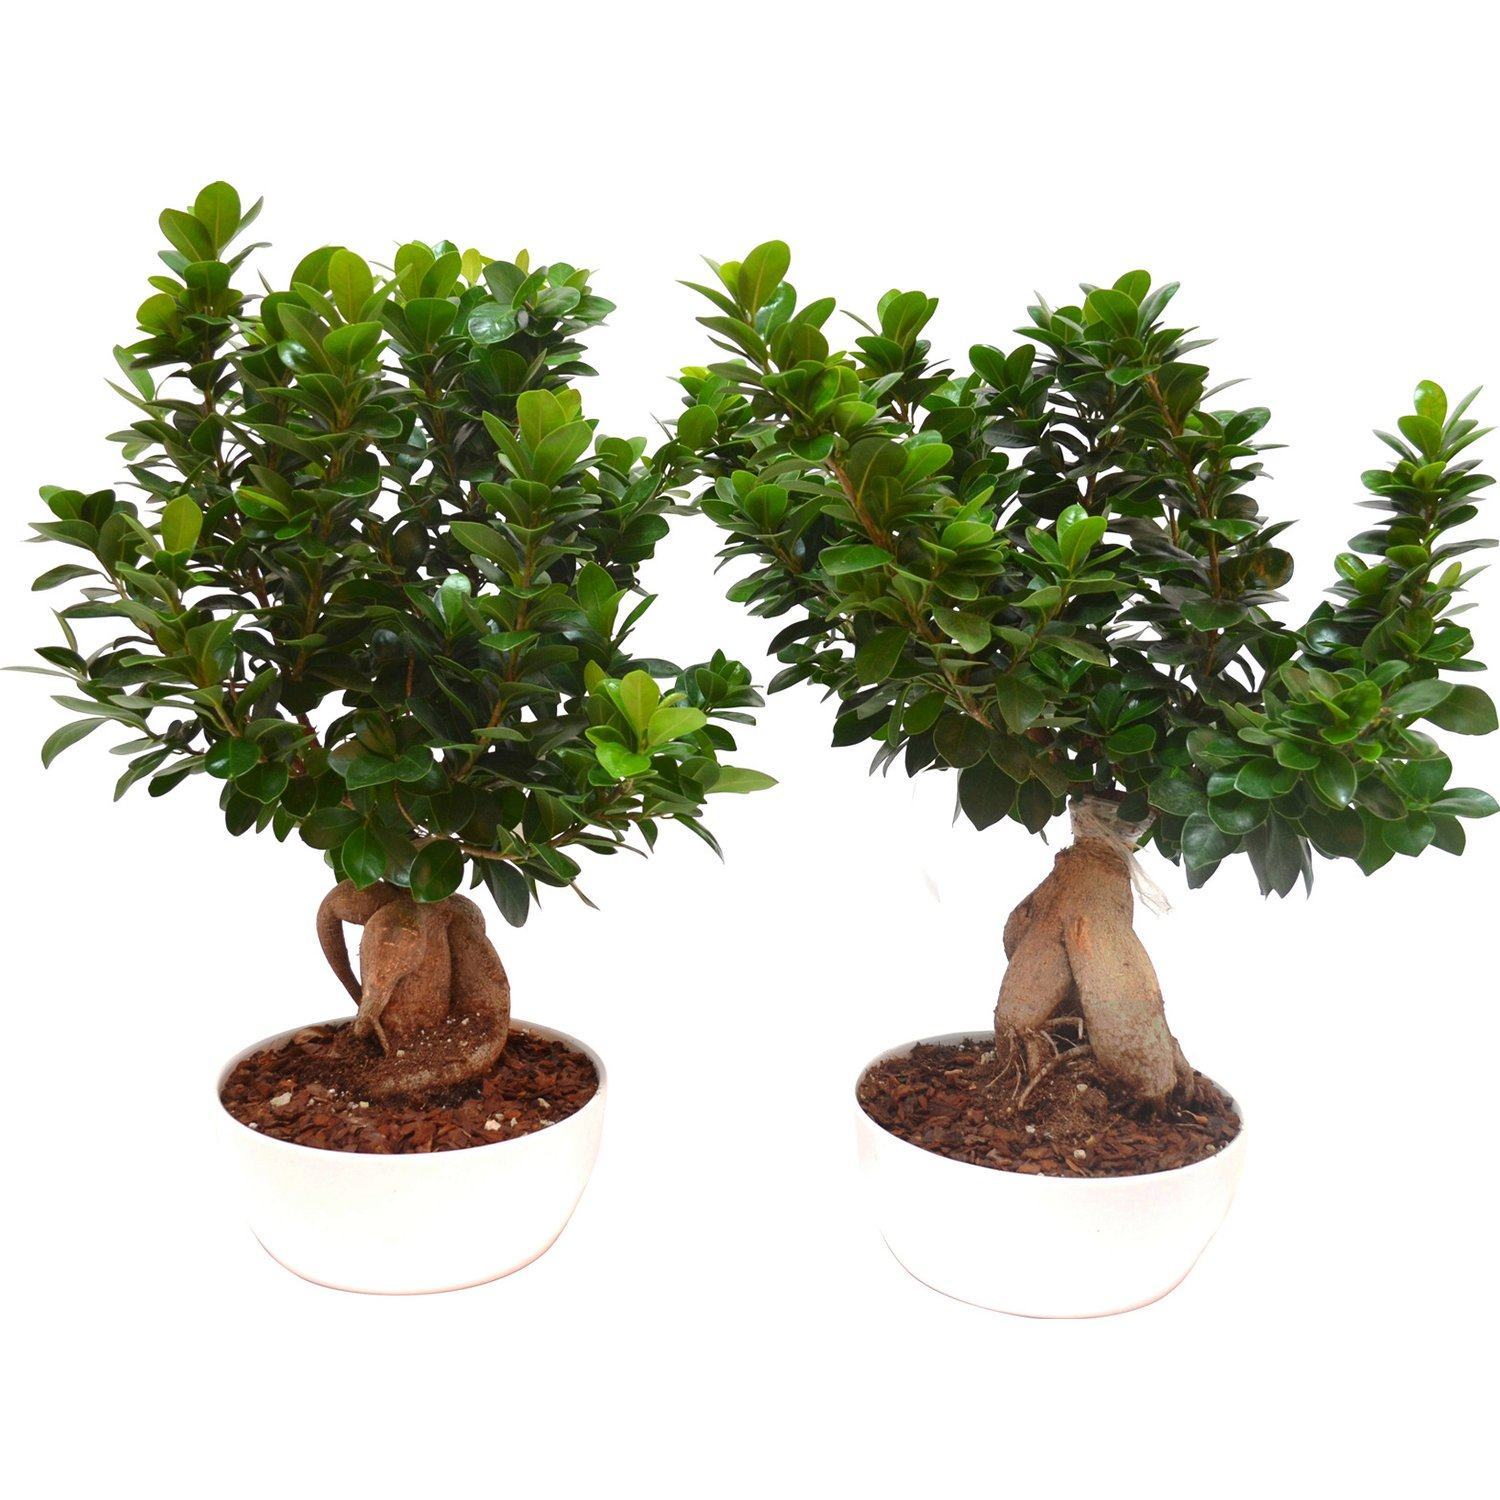 Hình ảnh cây bonsai nhỏ xinh